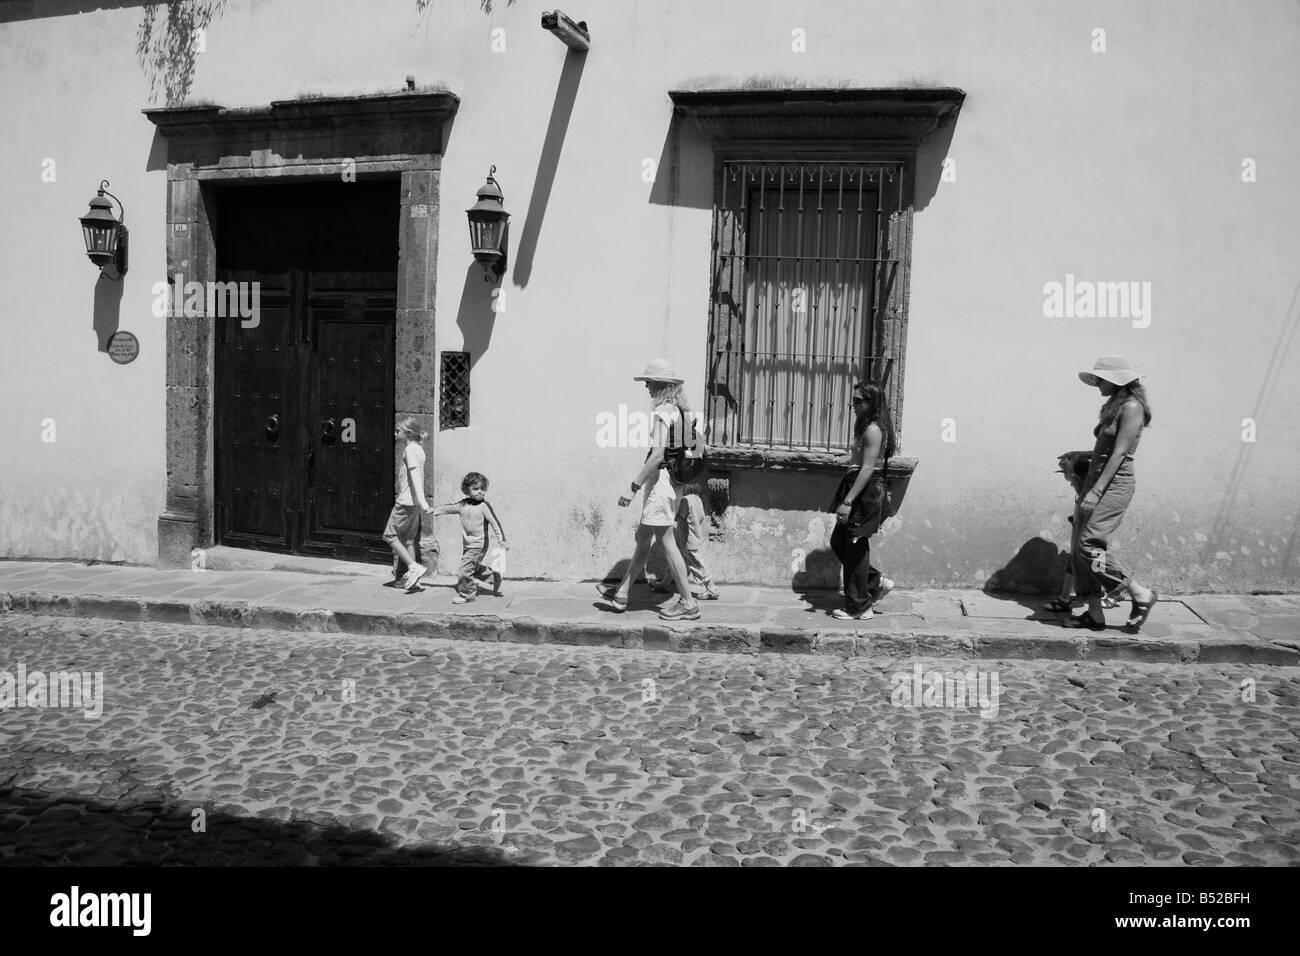 Familien Urlaub mit kleinen Kindern spazieren auf einem Bürgersteig in kleinen mexikanischen Kolonialstadt Stockfoto